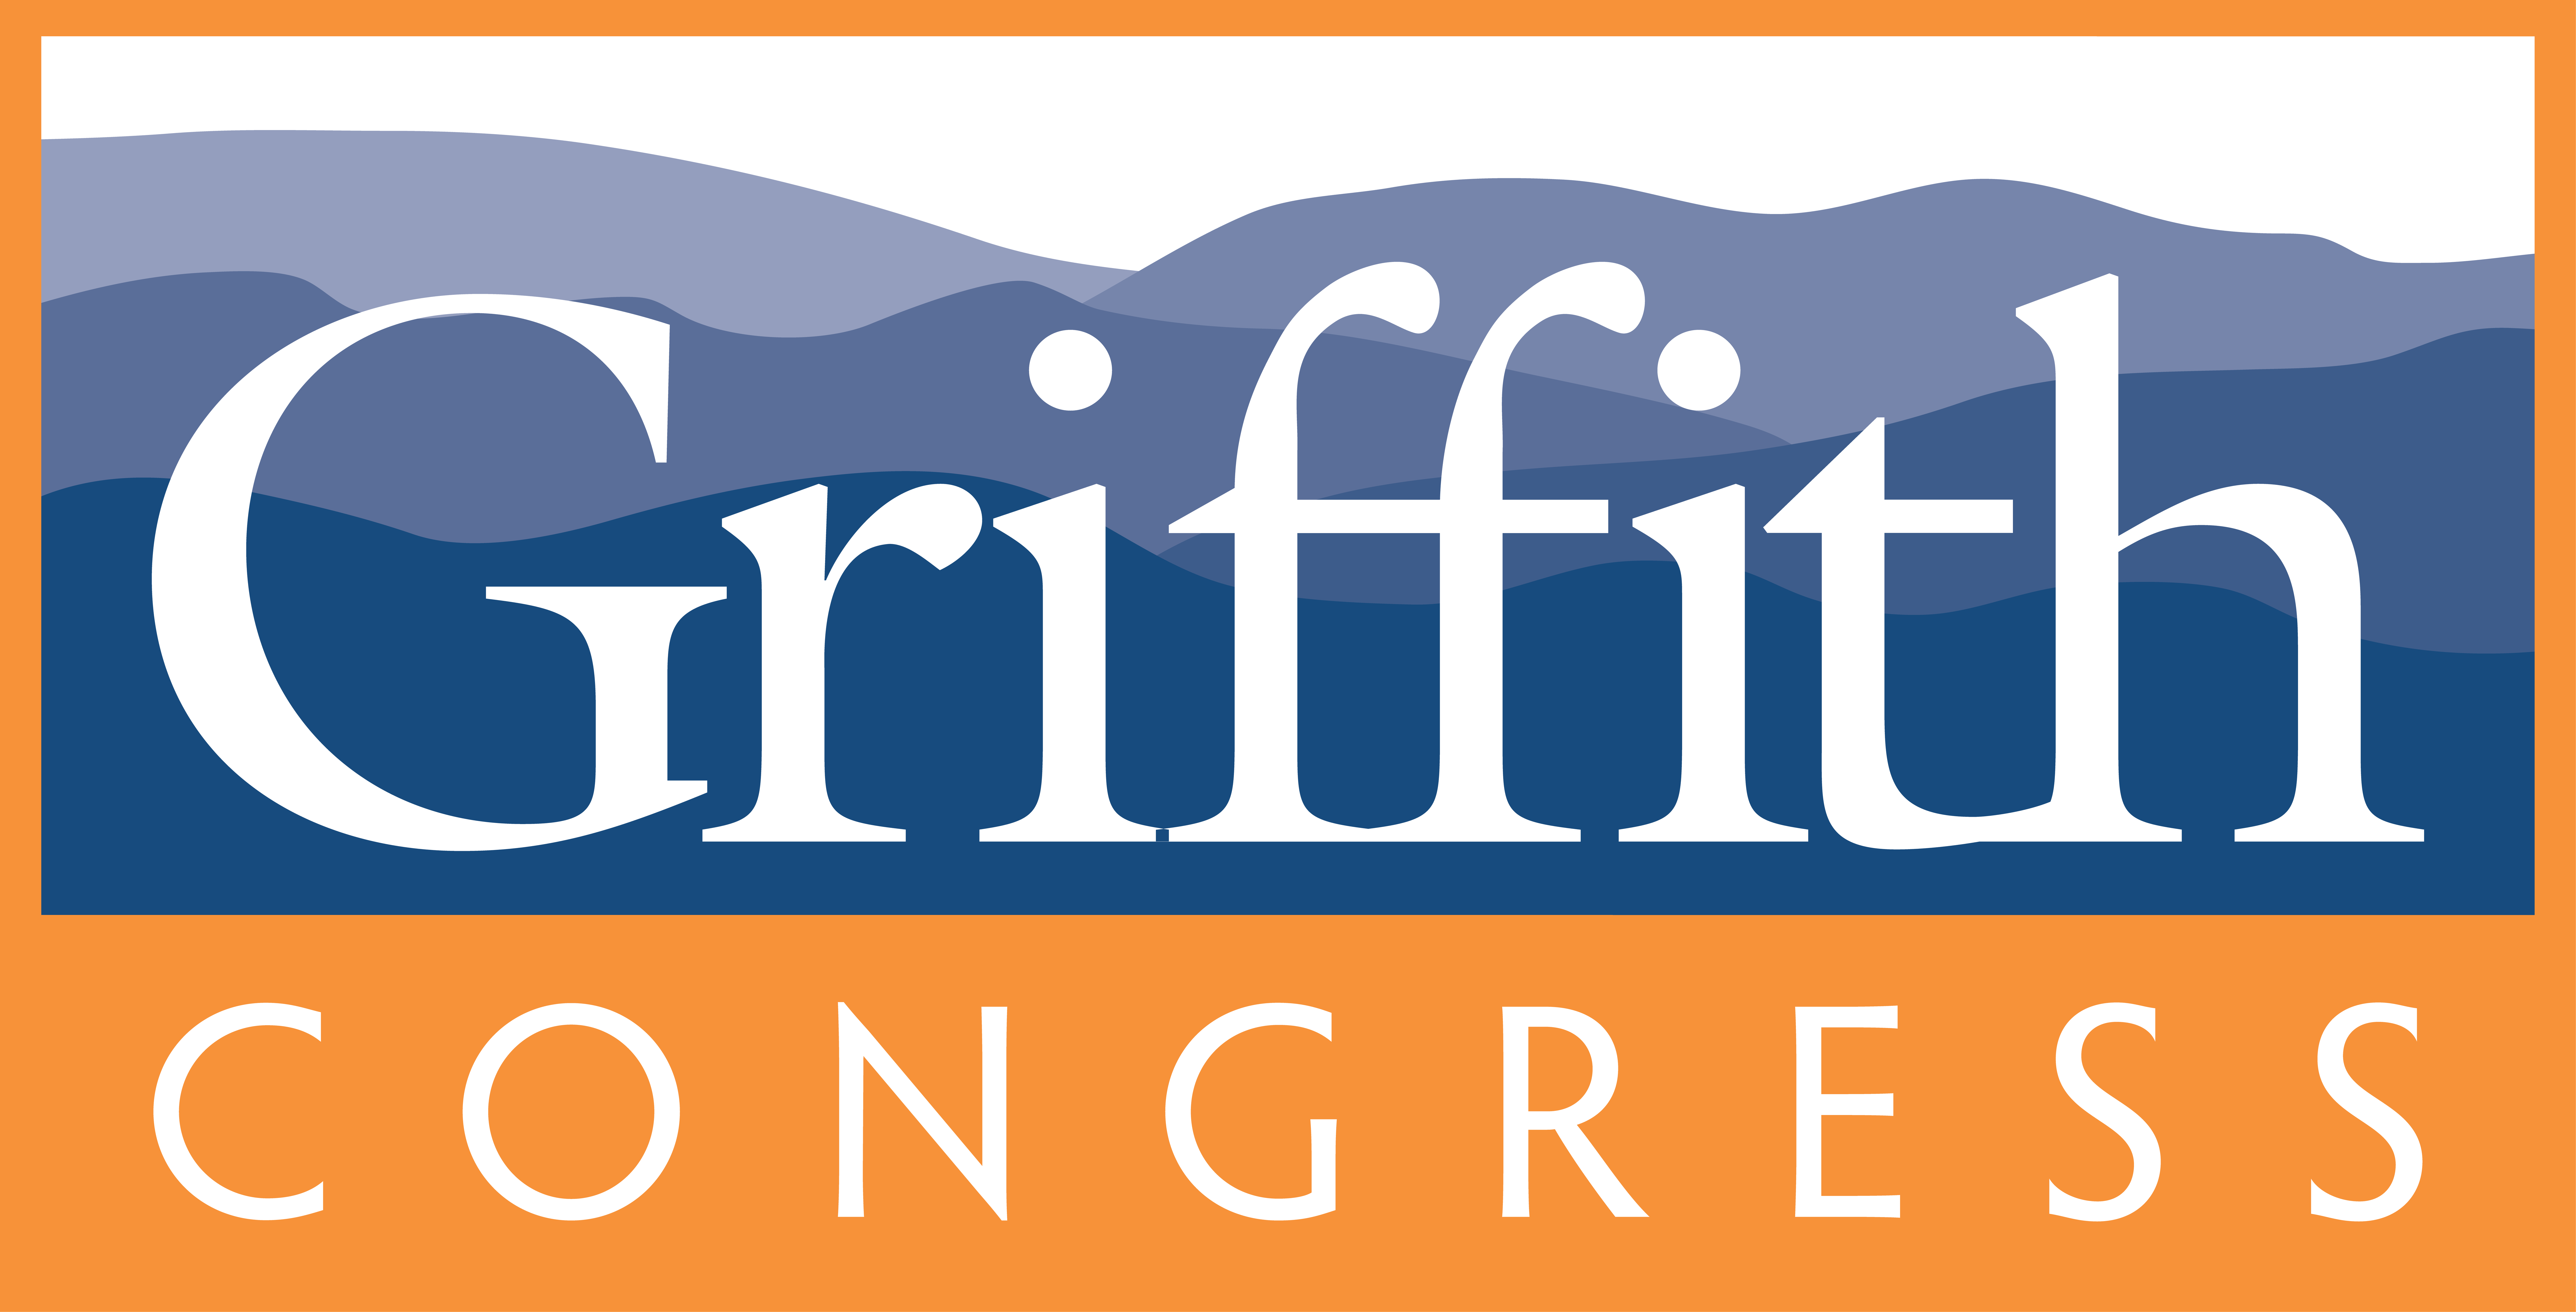 Morgan Griffith for Congress